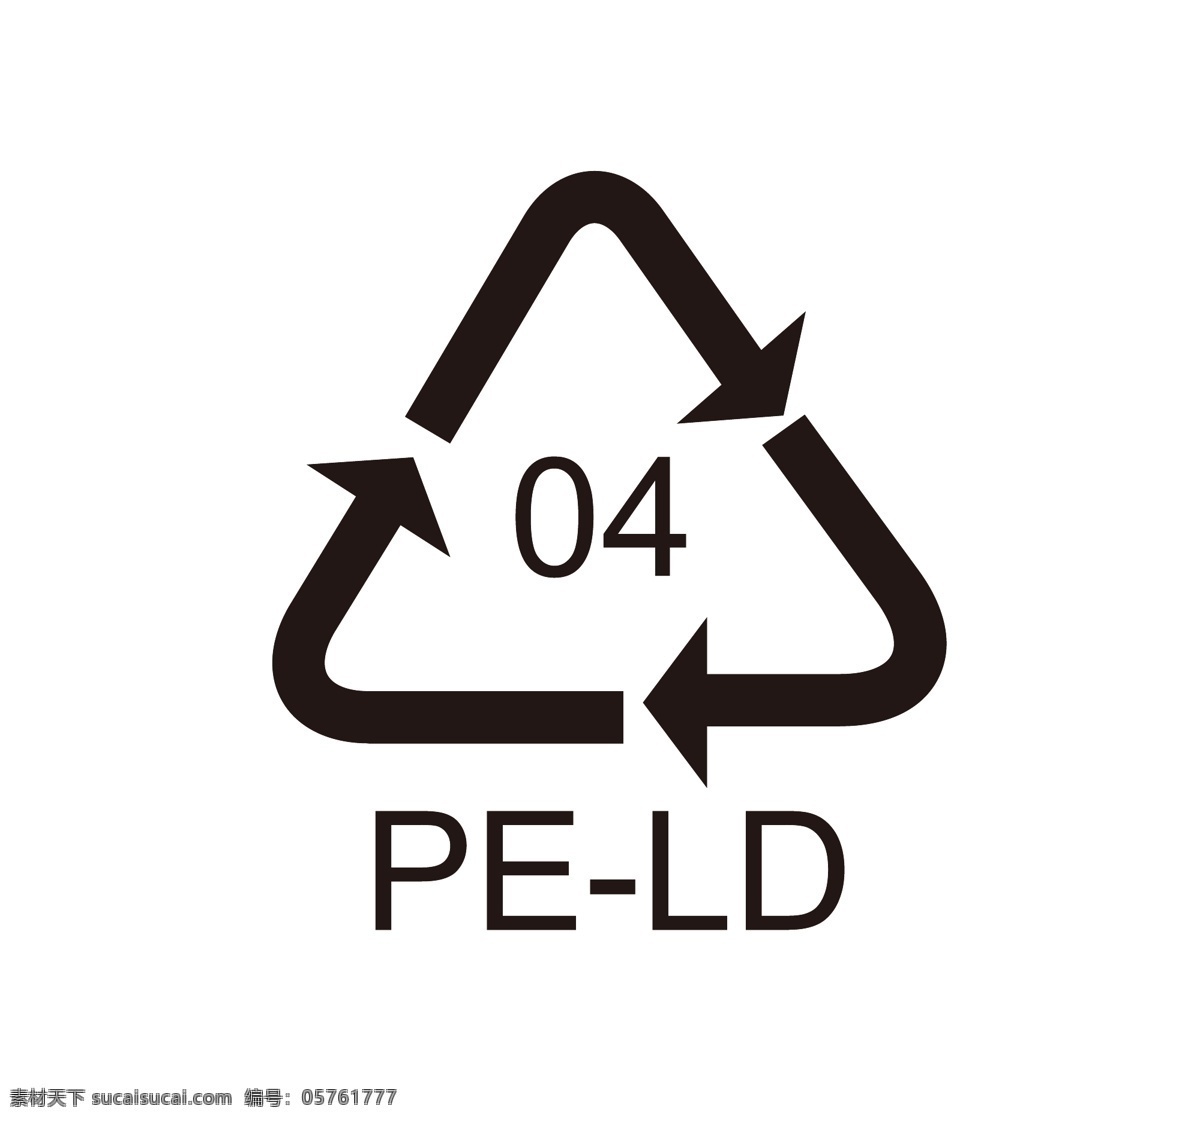 peld 回收 标志 环保 pe ld 标志图标 公共标识标志